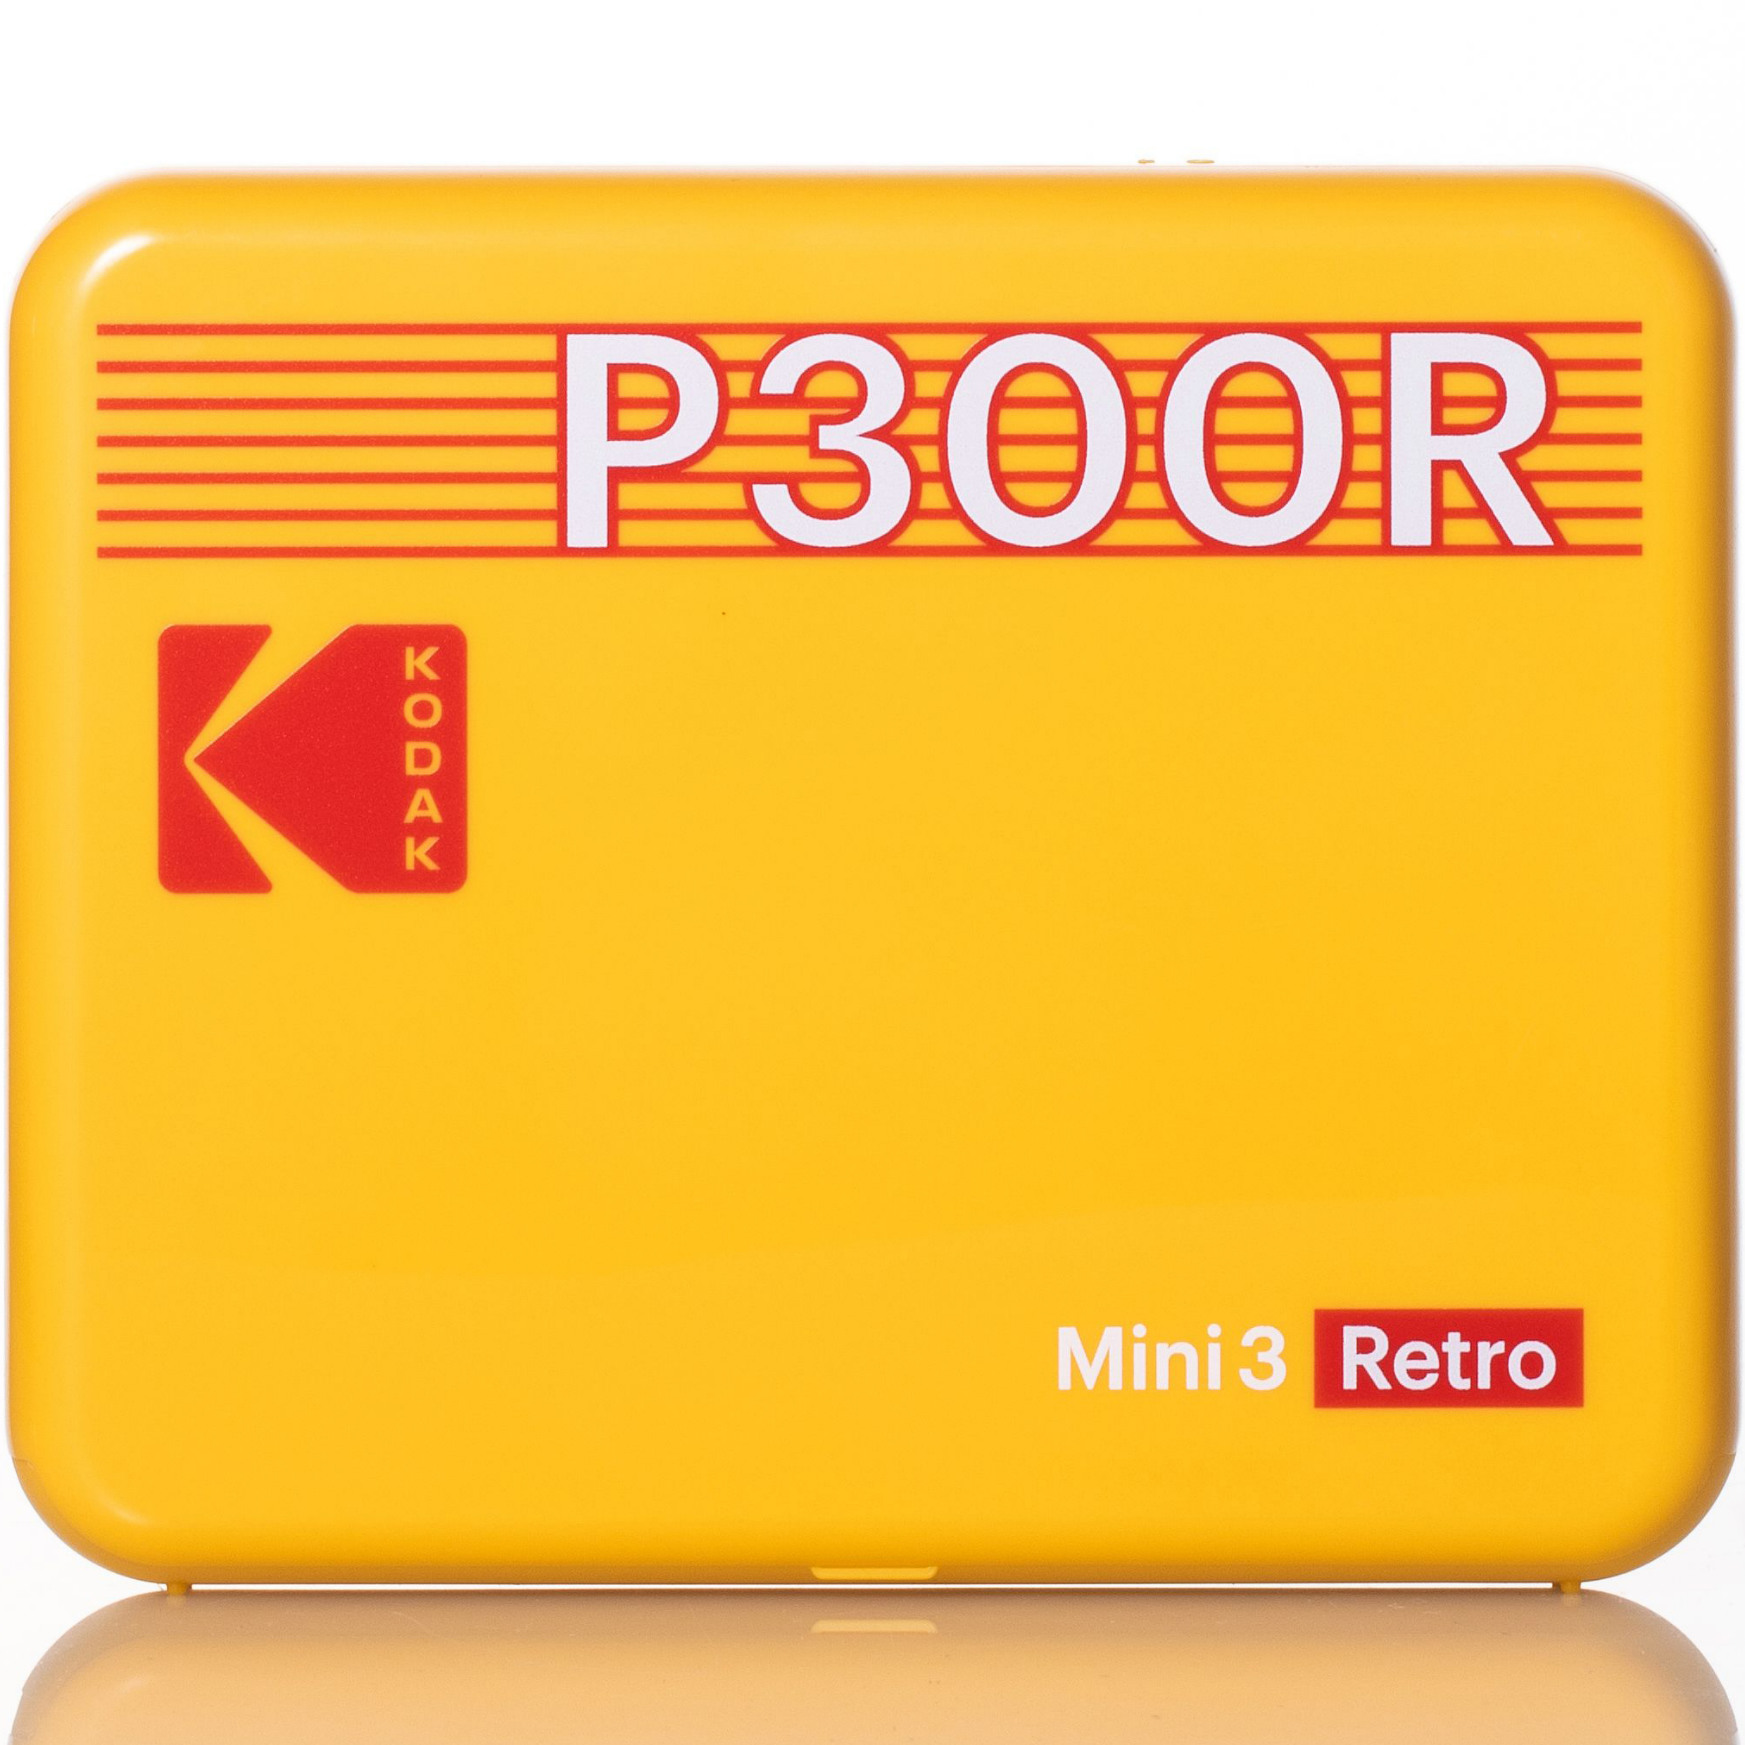 KODAK Mini 3 Retro Printer KOPRIP300 Yellow